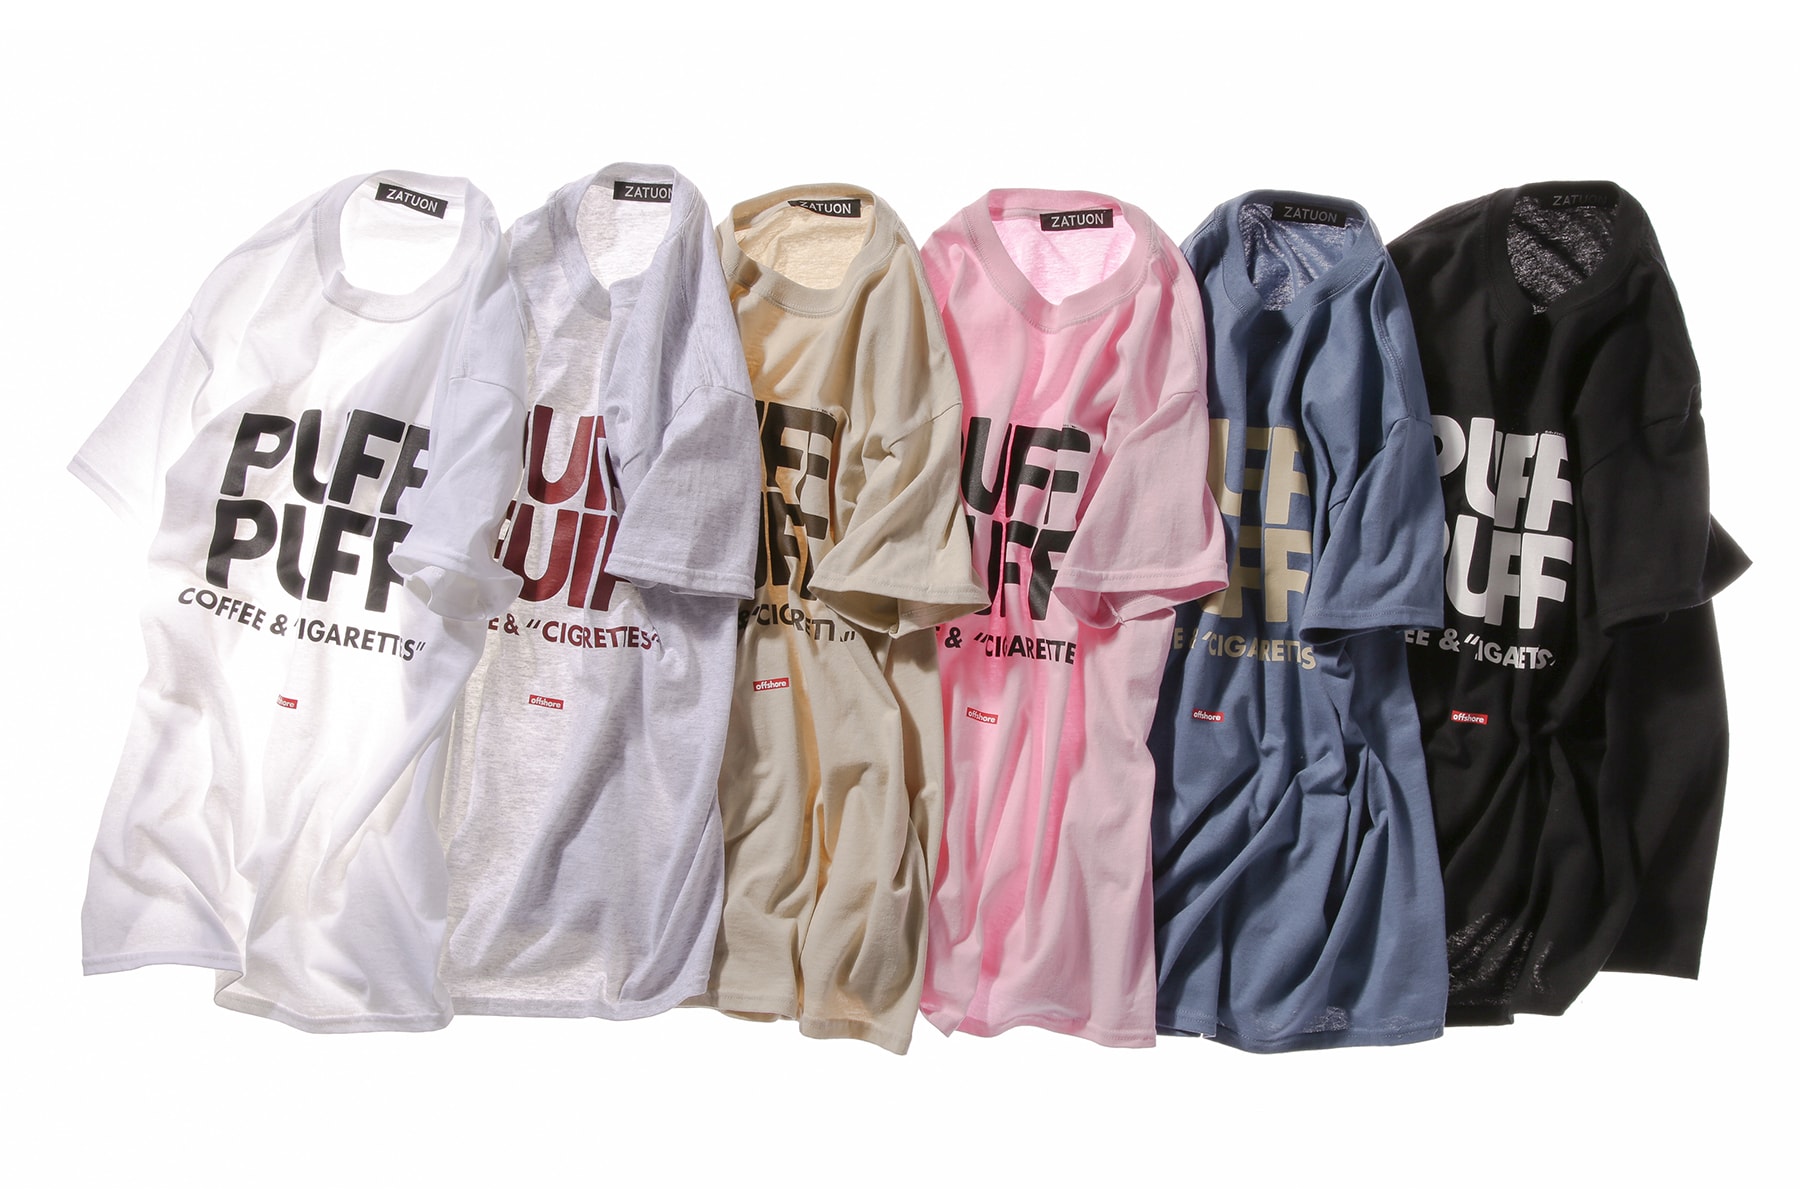 offshore がドラゴンボール x ZATUON の限定コラボコレクションをリリース ブルマをフィーチャーし、PUFF PUFF Tシャツなど全3型のエロティックなTシャツを展開